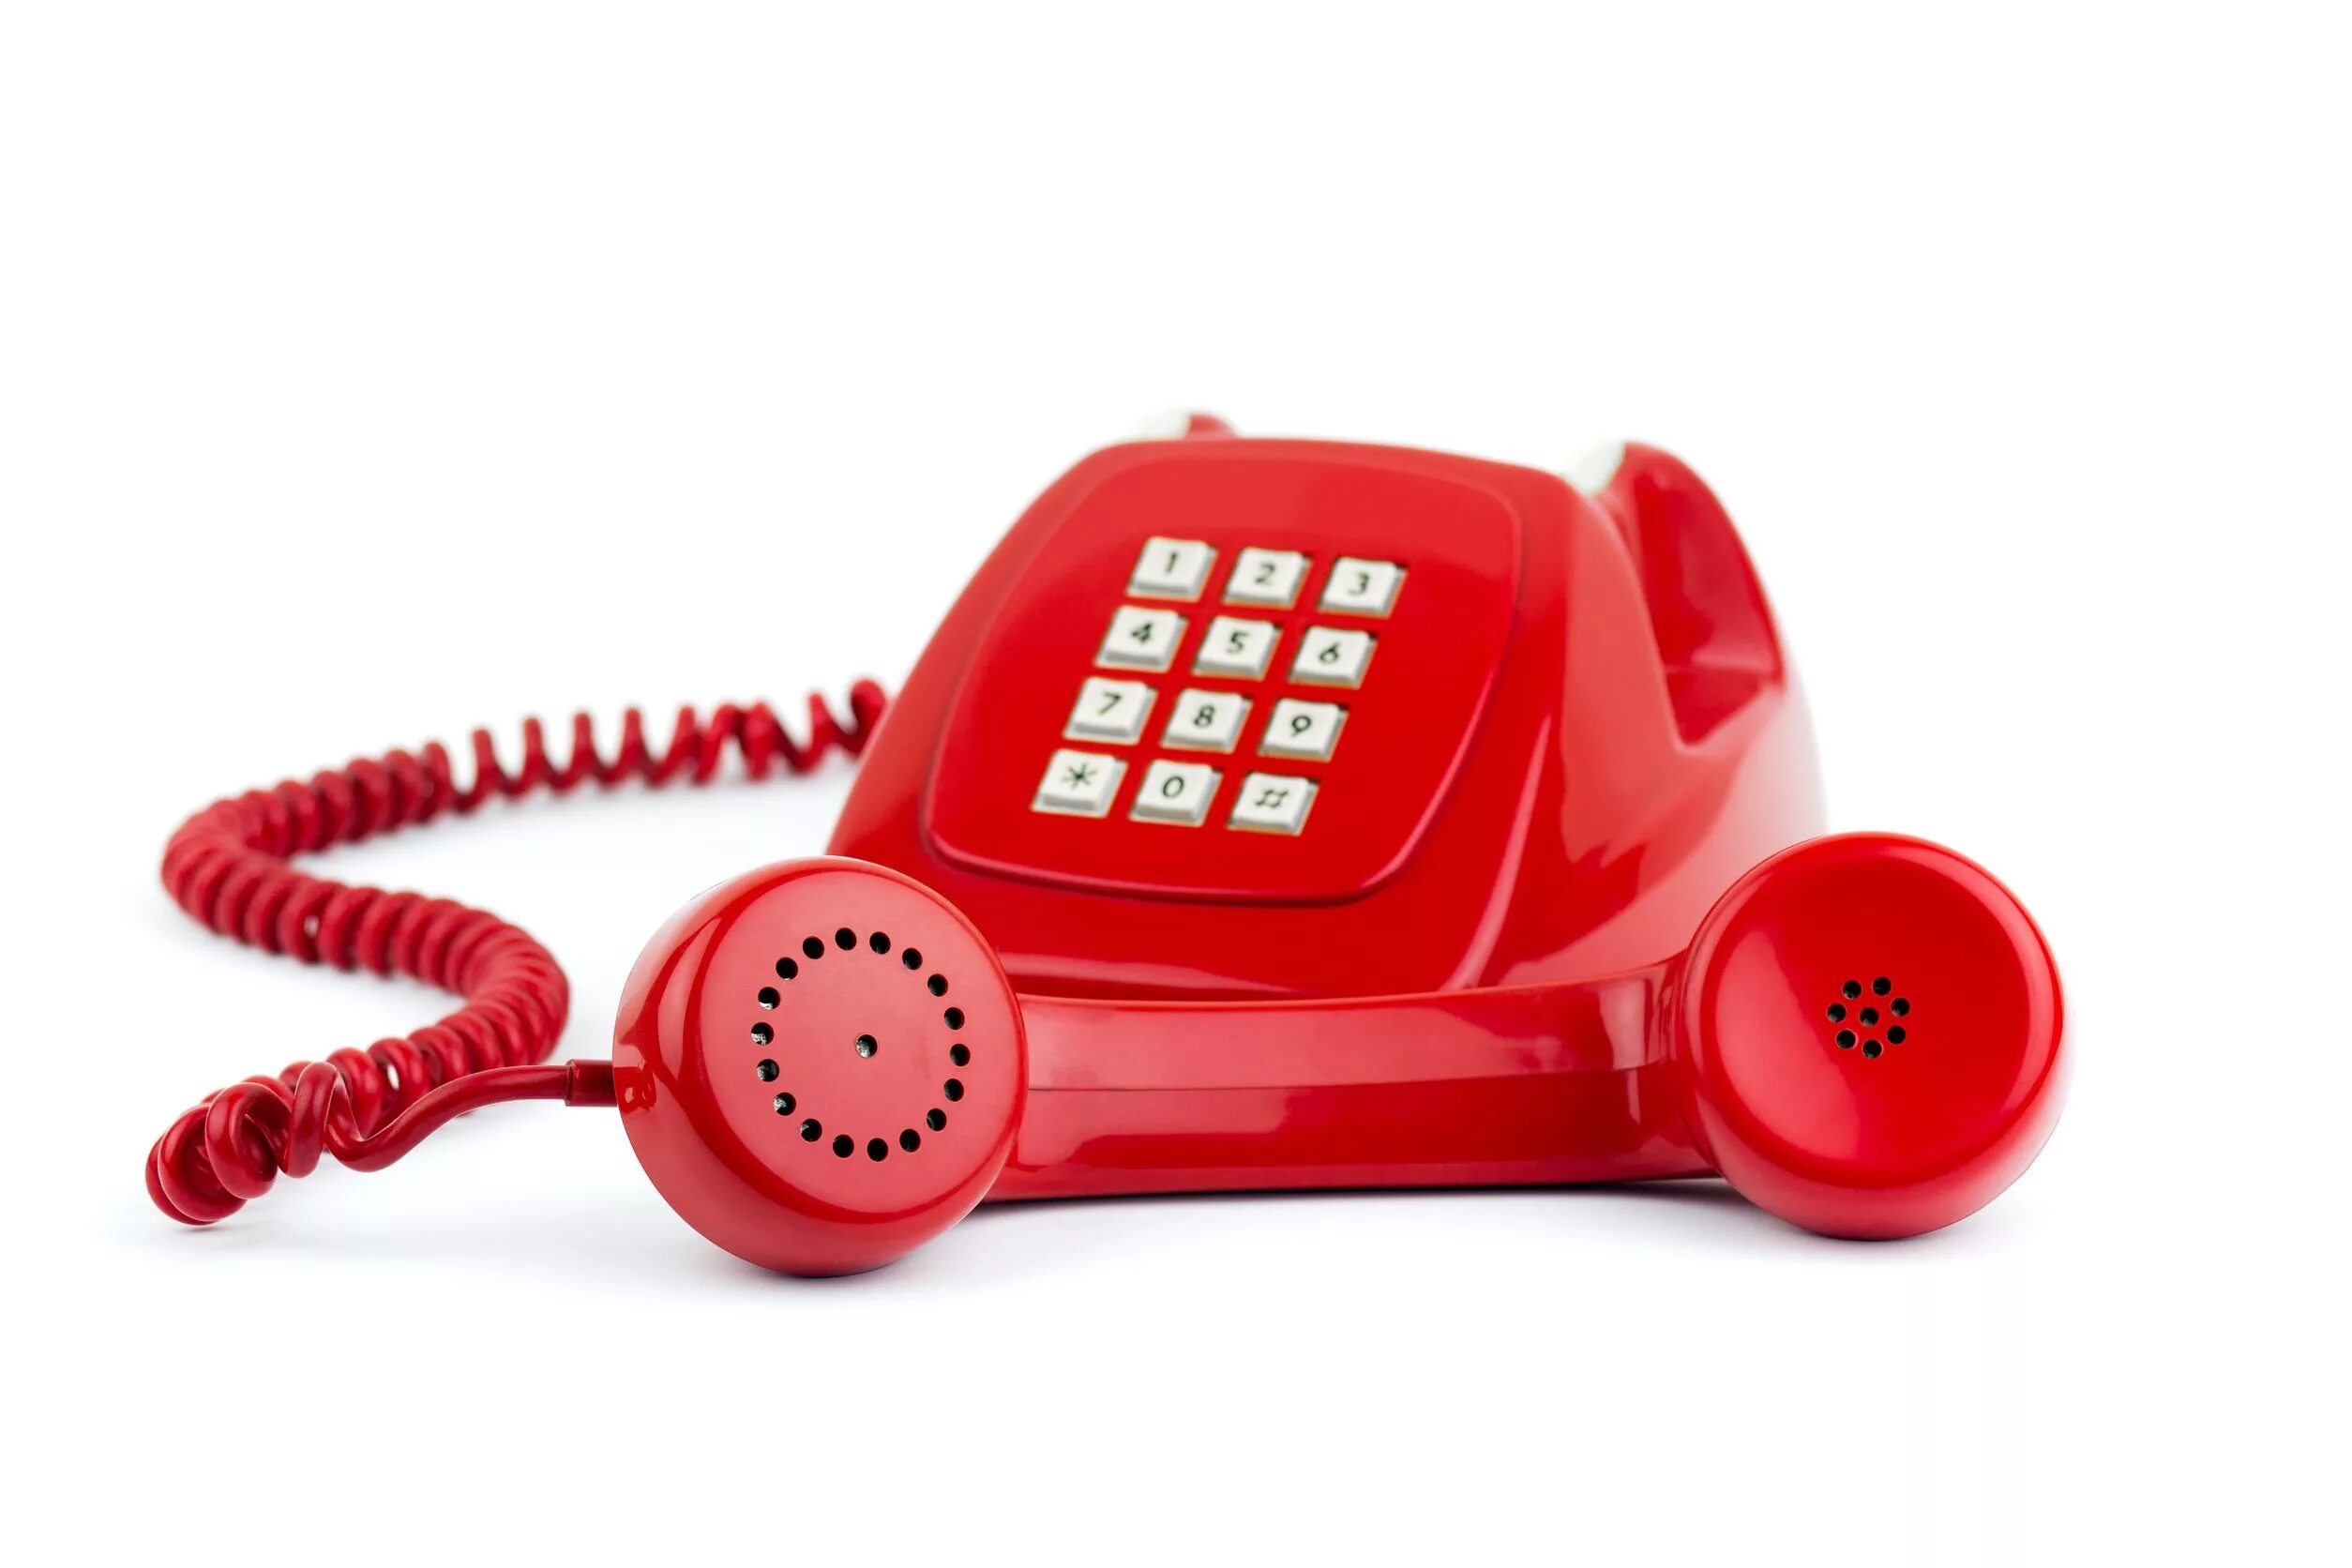 Горячая линия энгельс телефон. Красный телефон. Горячая телефонная линия. Телефонная трубка. Телефон проводной красный.